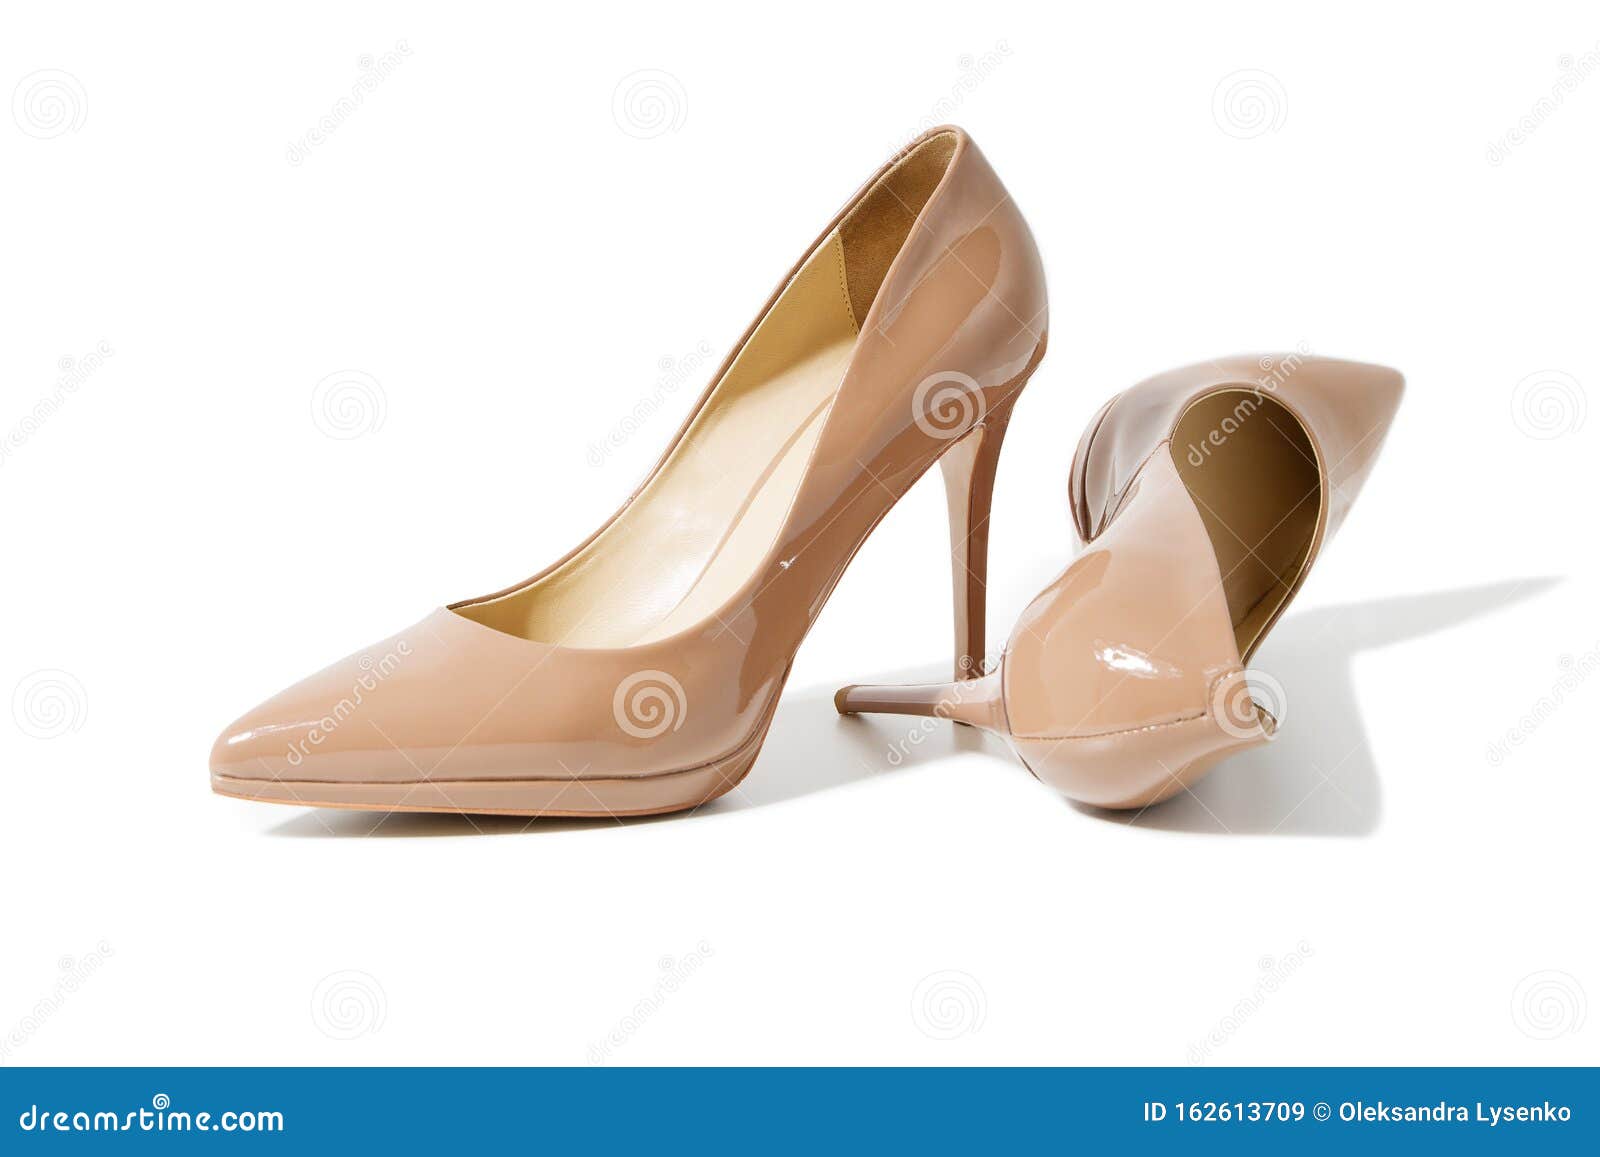 High Heels Women Shoes Beige Color 